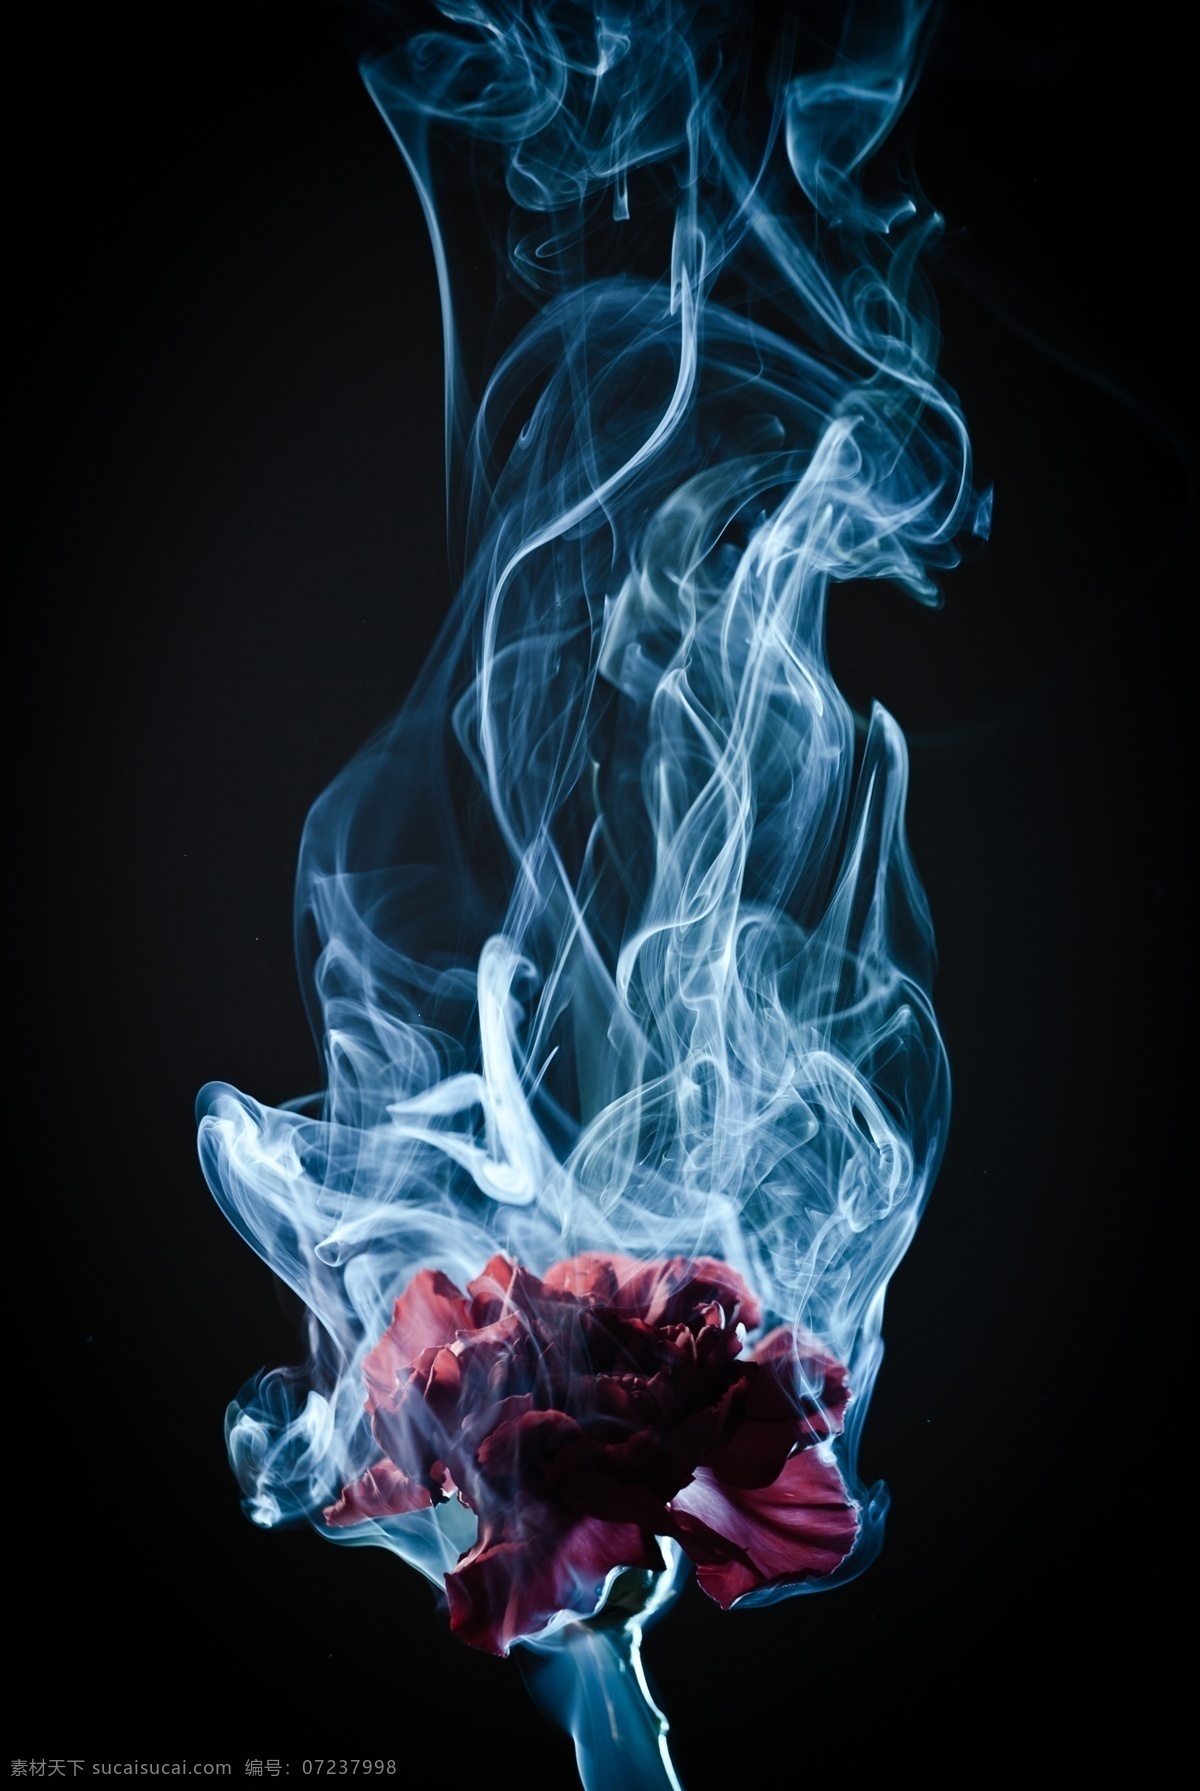 燃烧的花朵 鲜花 花卉 烟雾 白烟 其他类别 生活百科 黑色